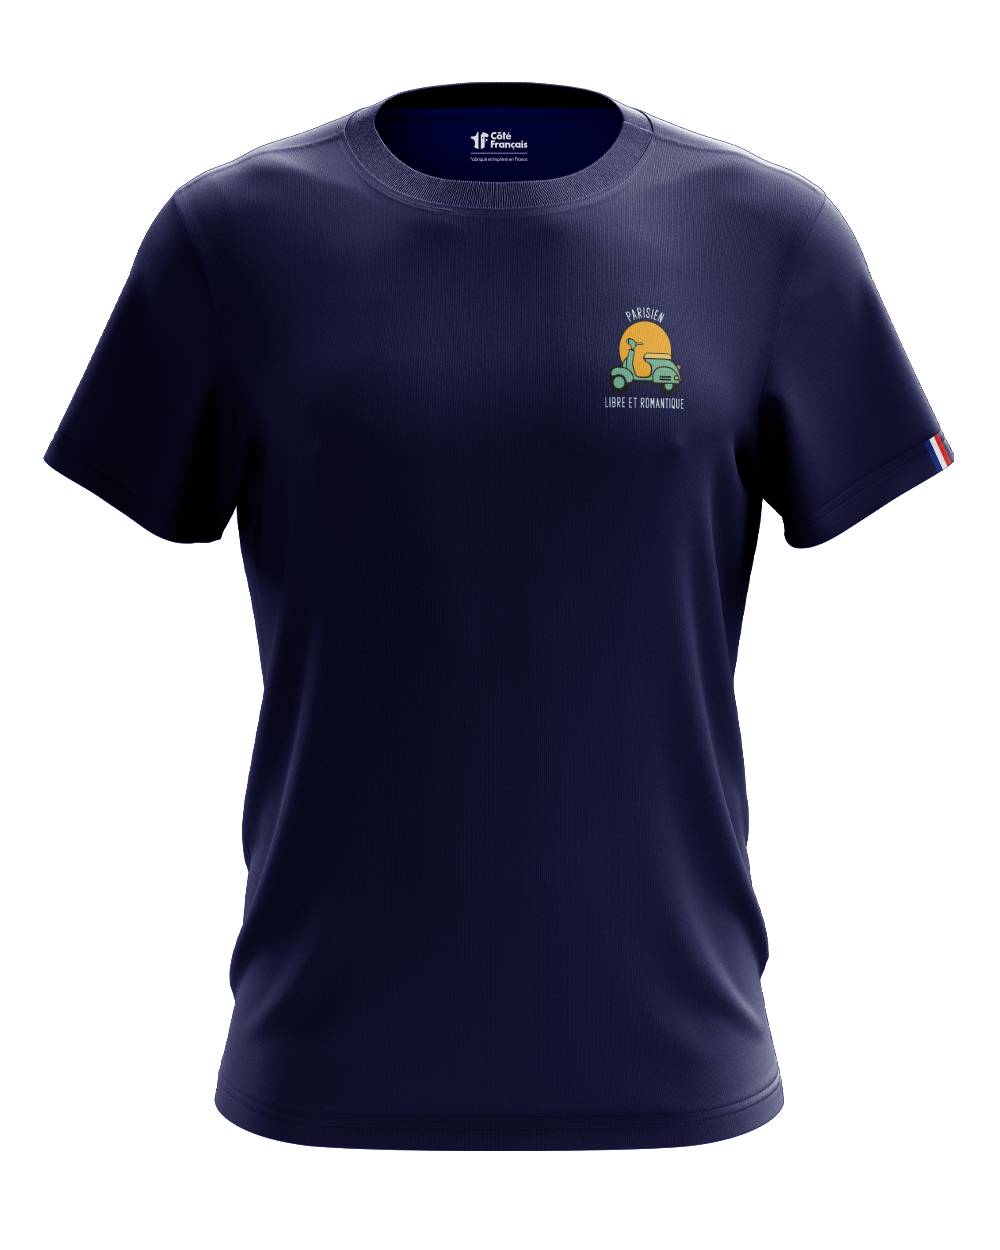 T-Shirt "Parisien Libre et romantique" - bleu marine